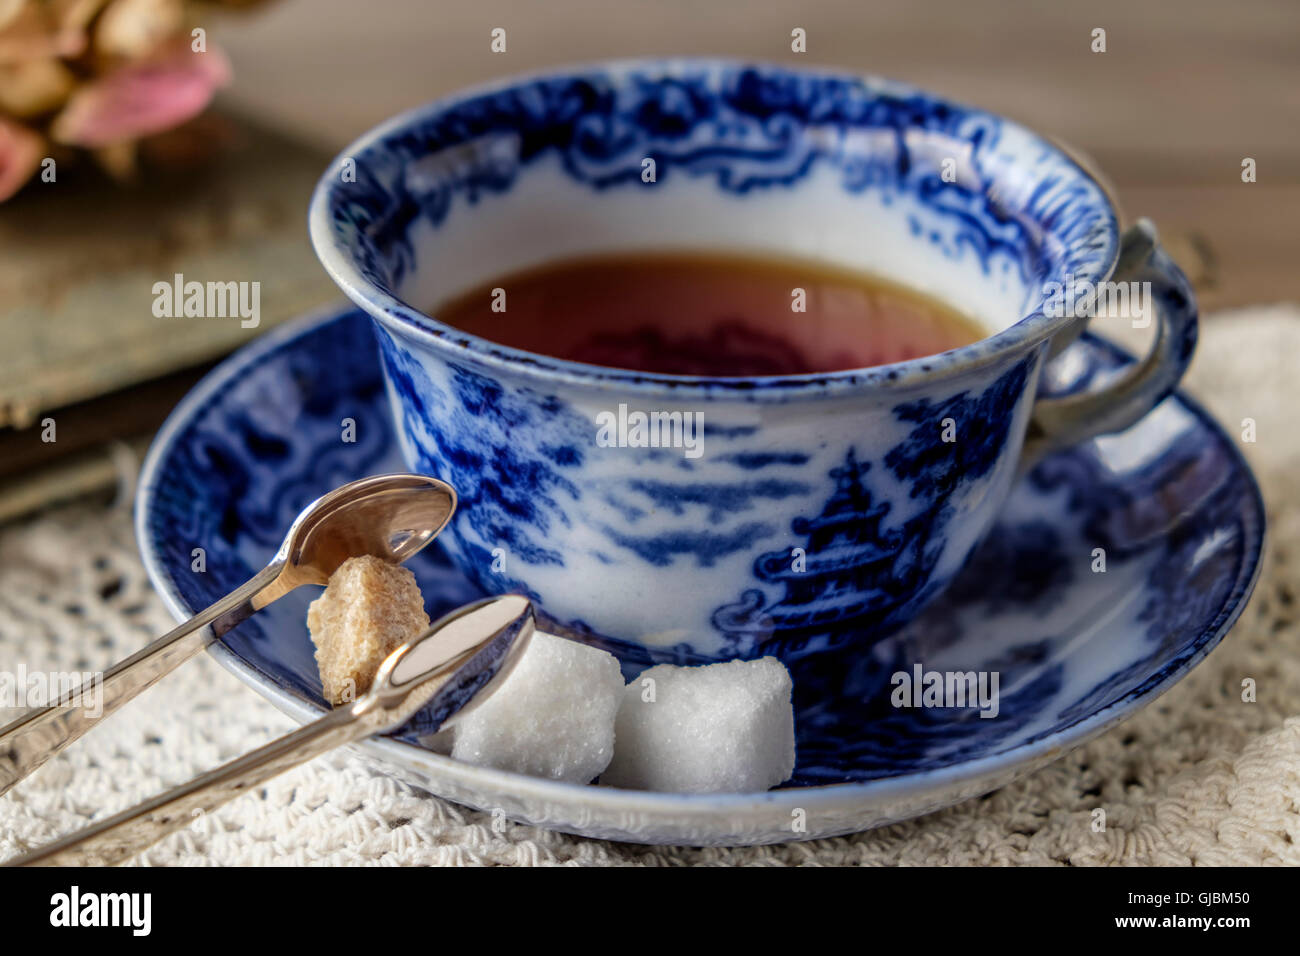 Taza de Té en la antigua china azul y blanca taza y plato con marrón y terrones de azúcar blanco, azúcar pinzas con tela de encaje Foto de stock